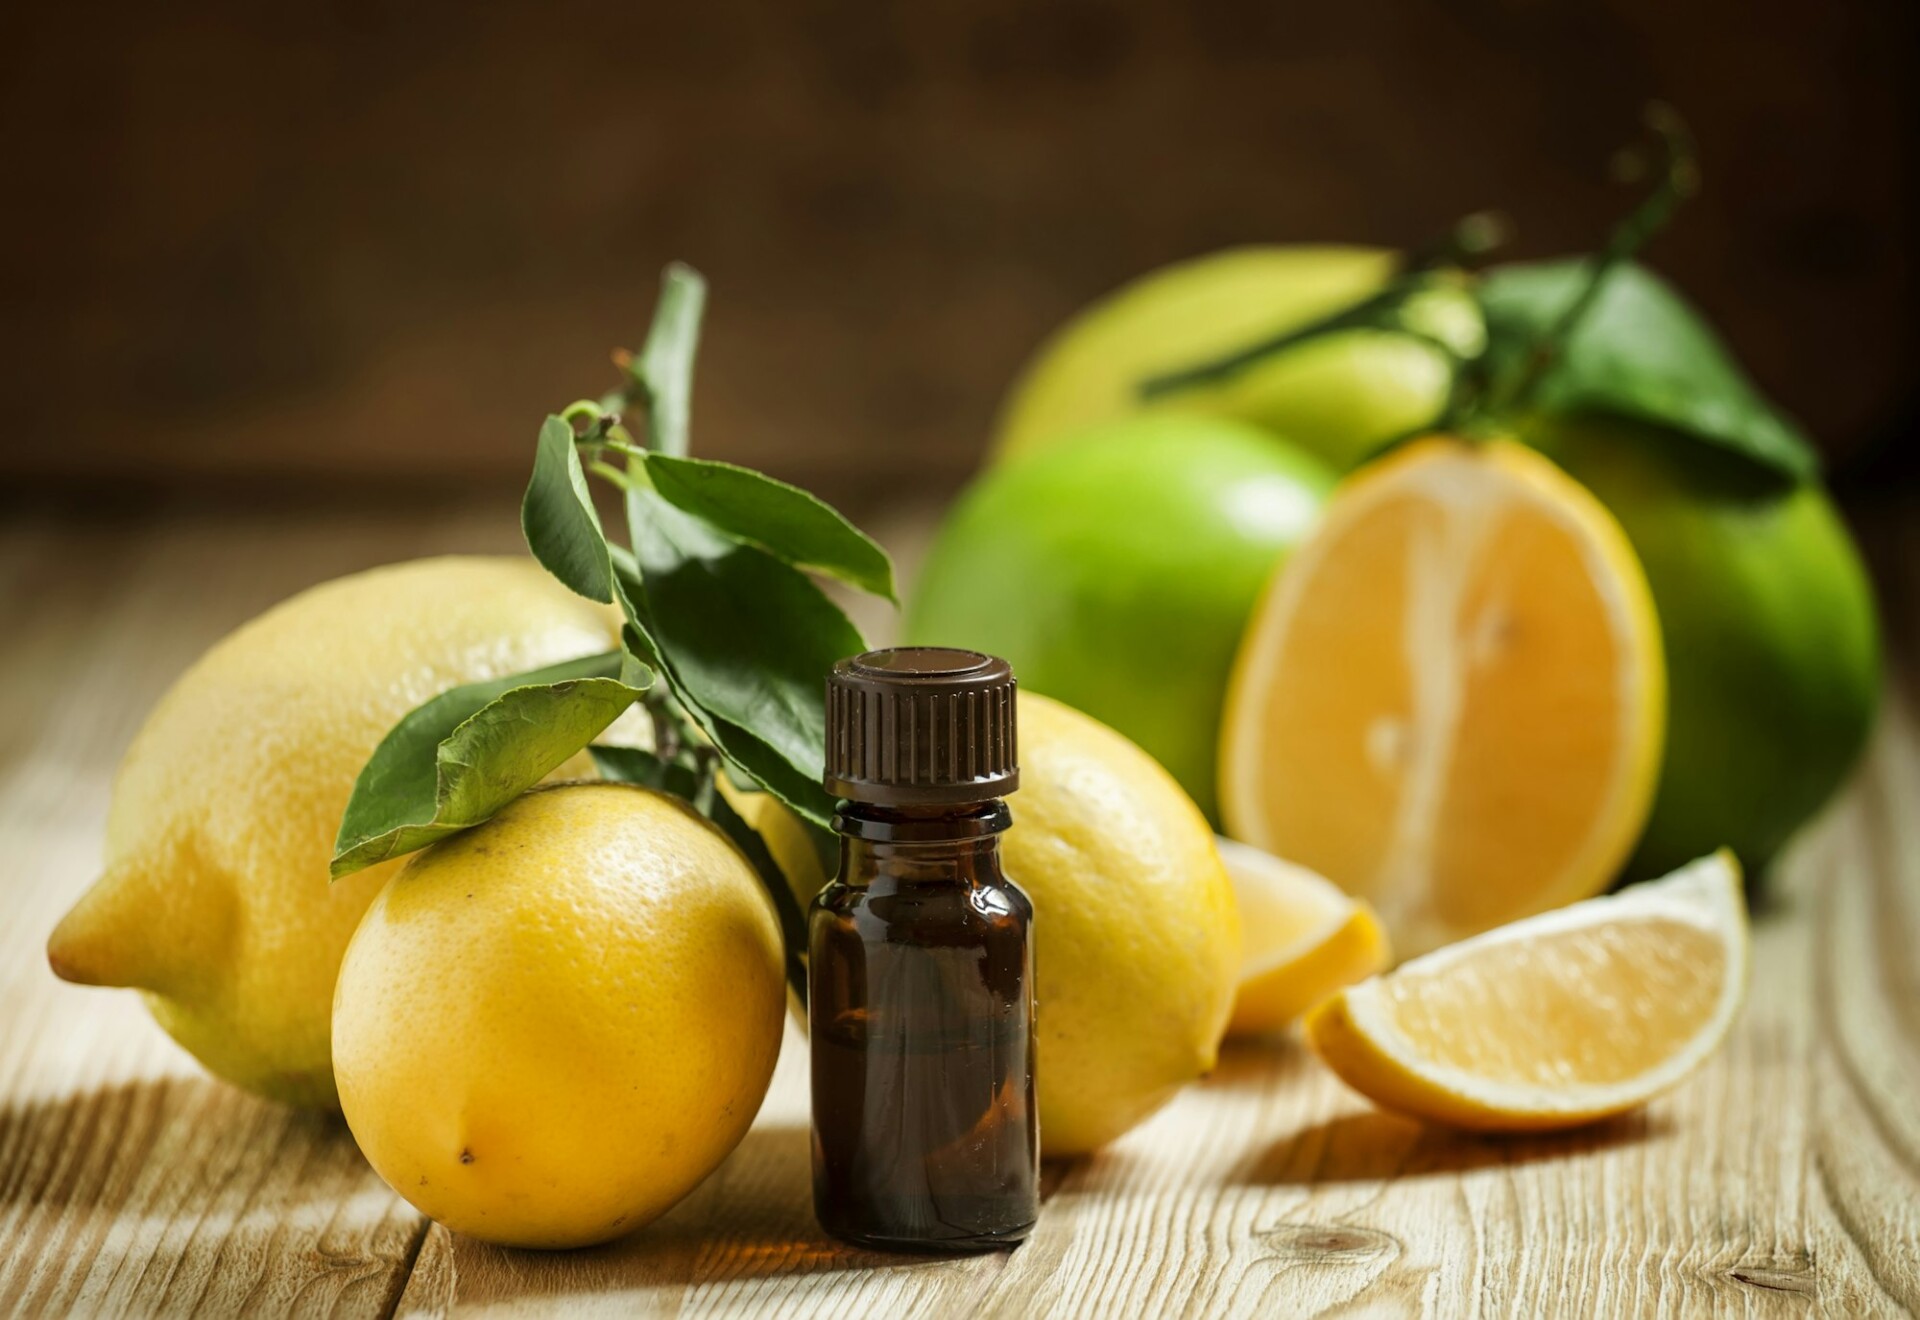 essential-oil-of-lemon-and-fresh-lemons.jpg